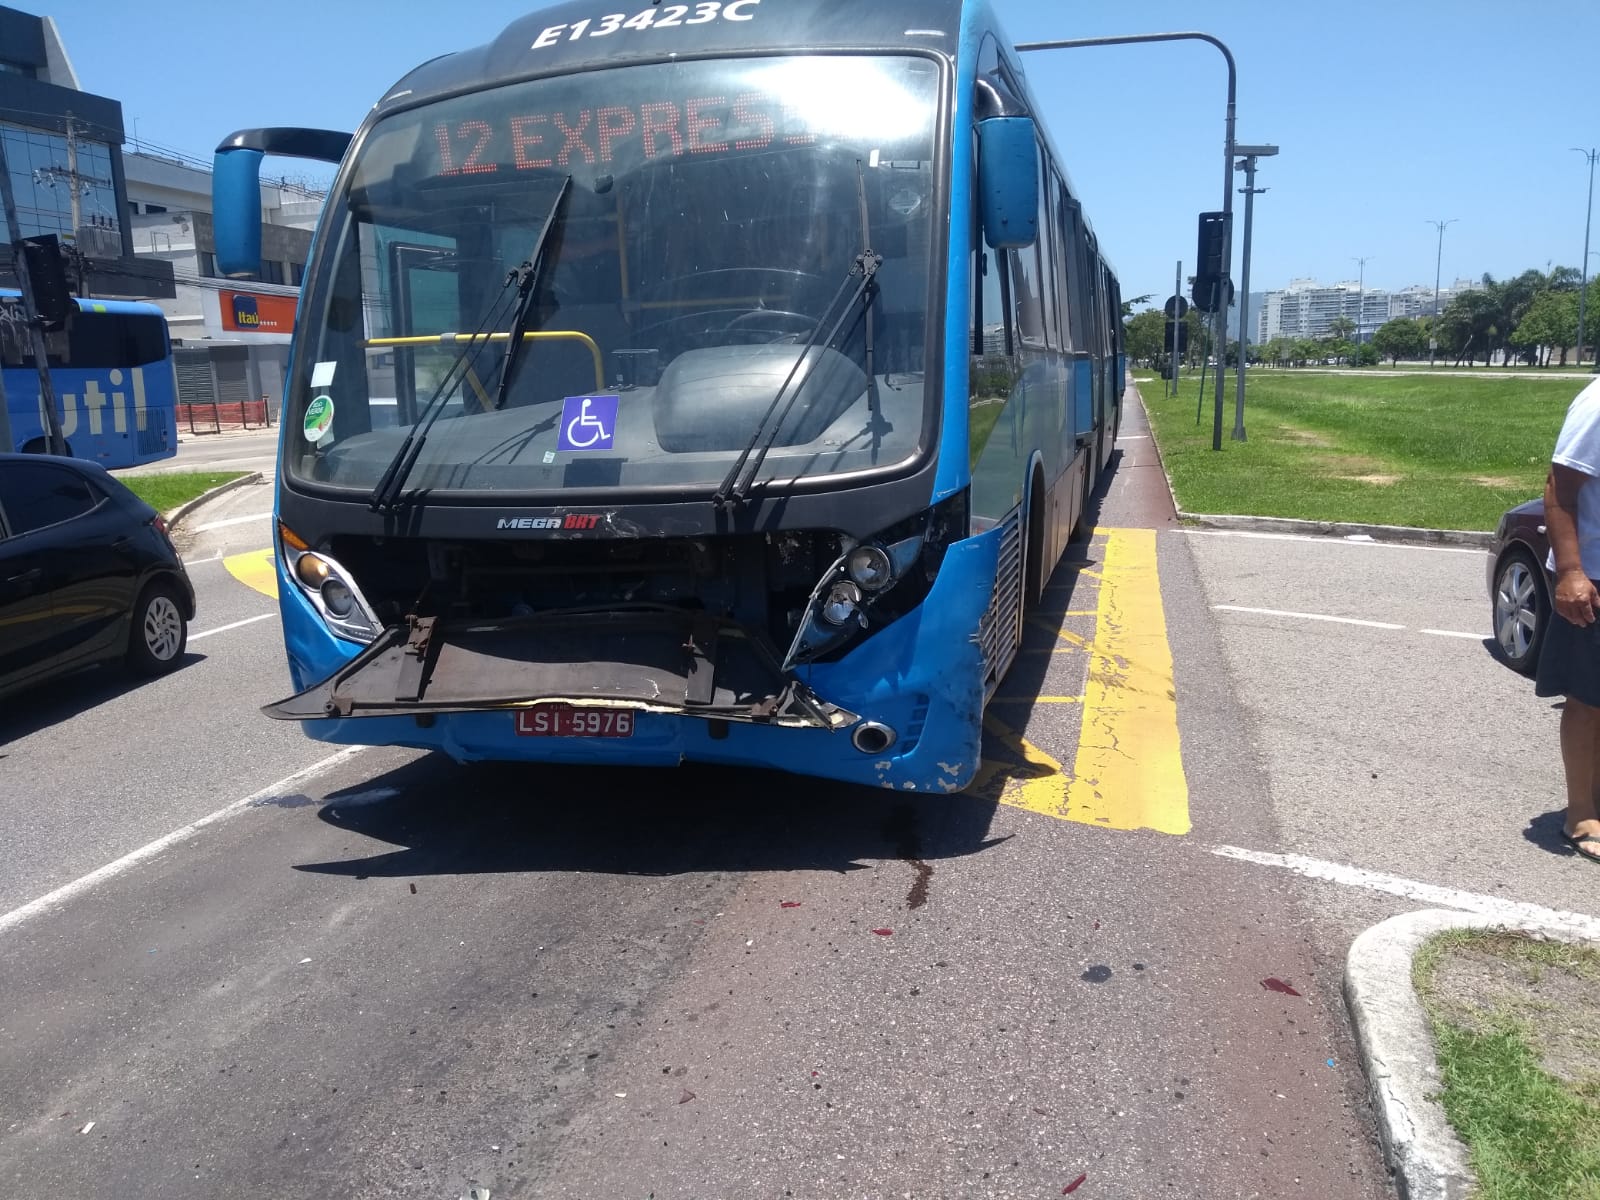 Imagem do BRT após acidente